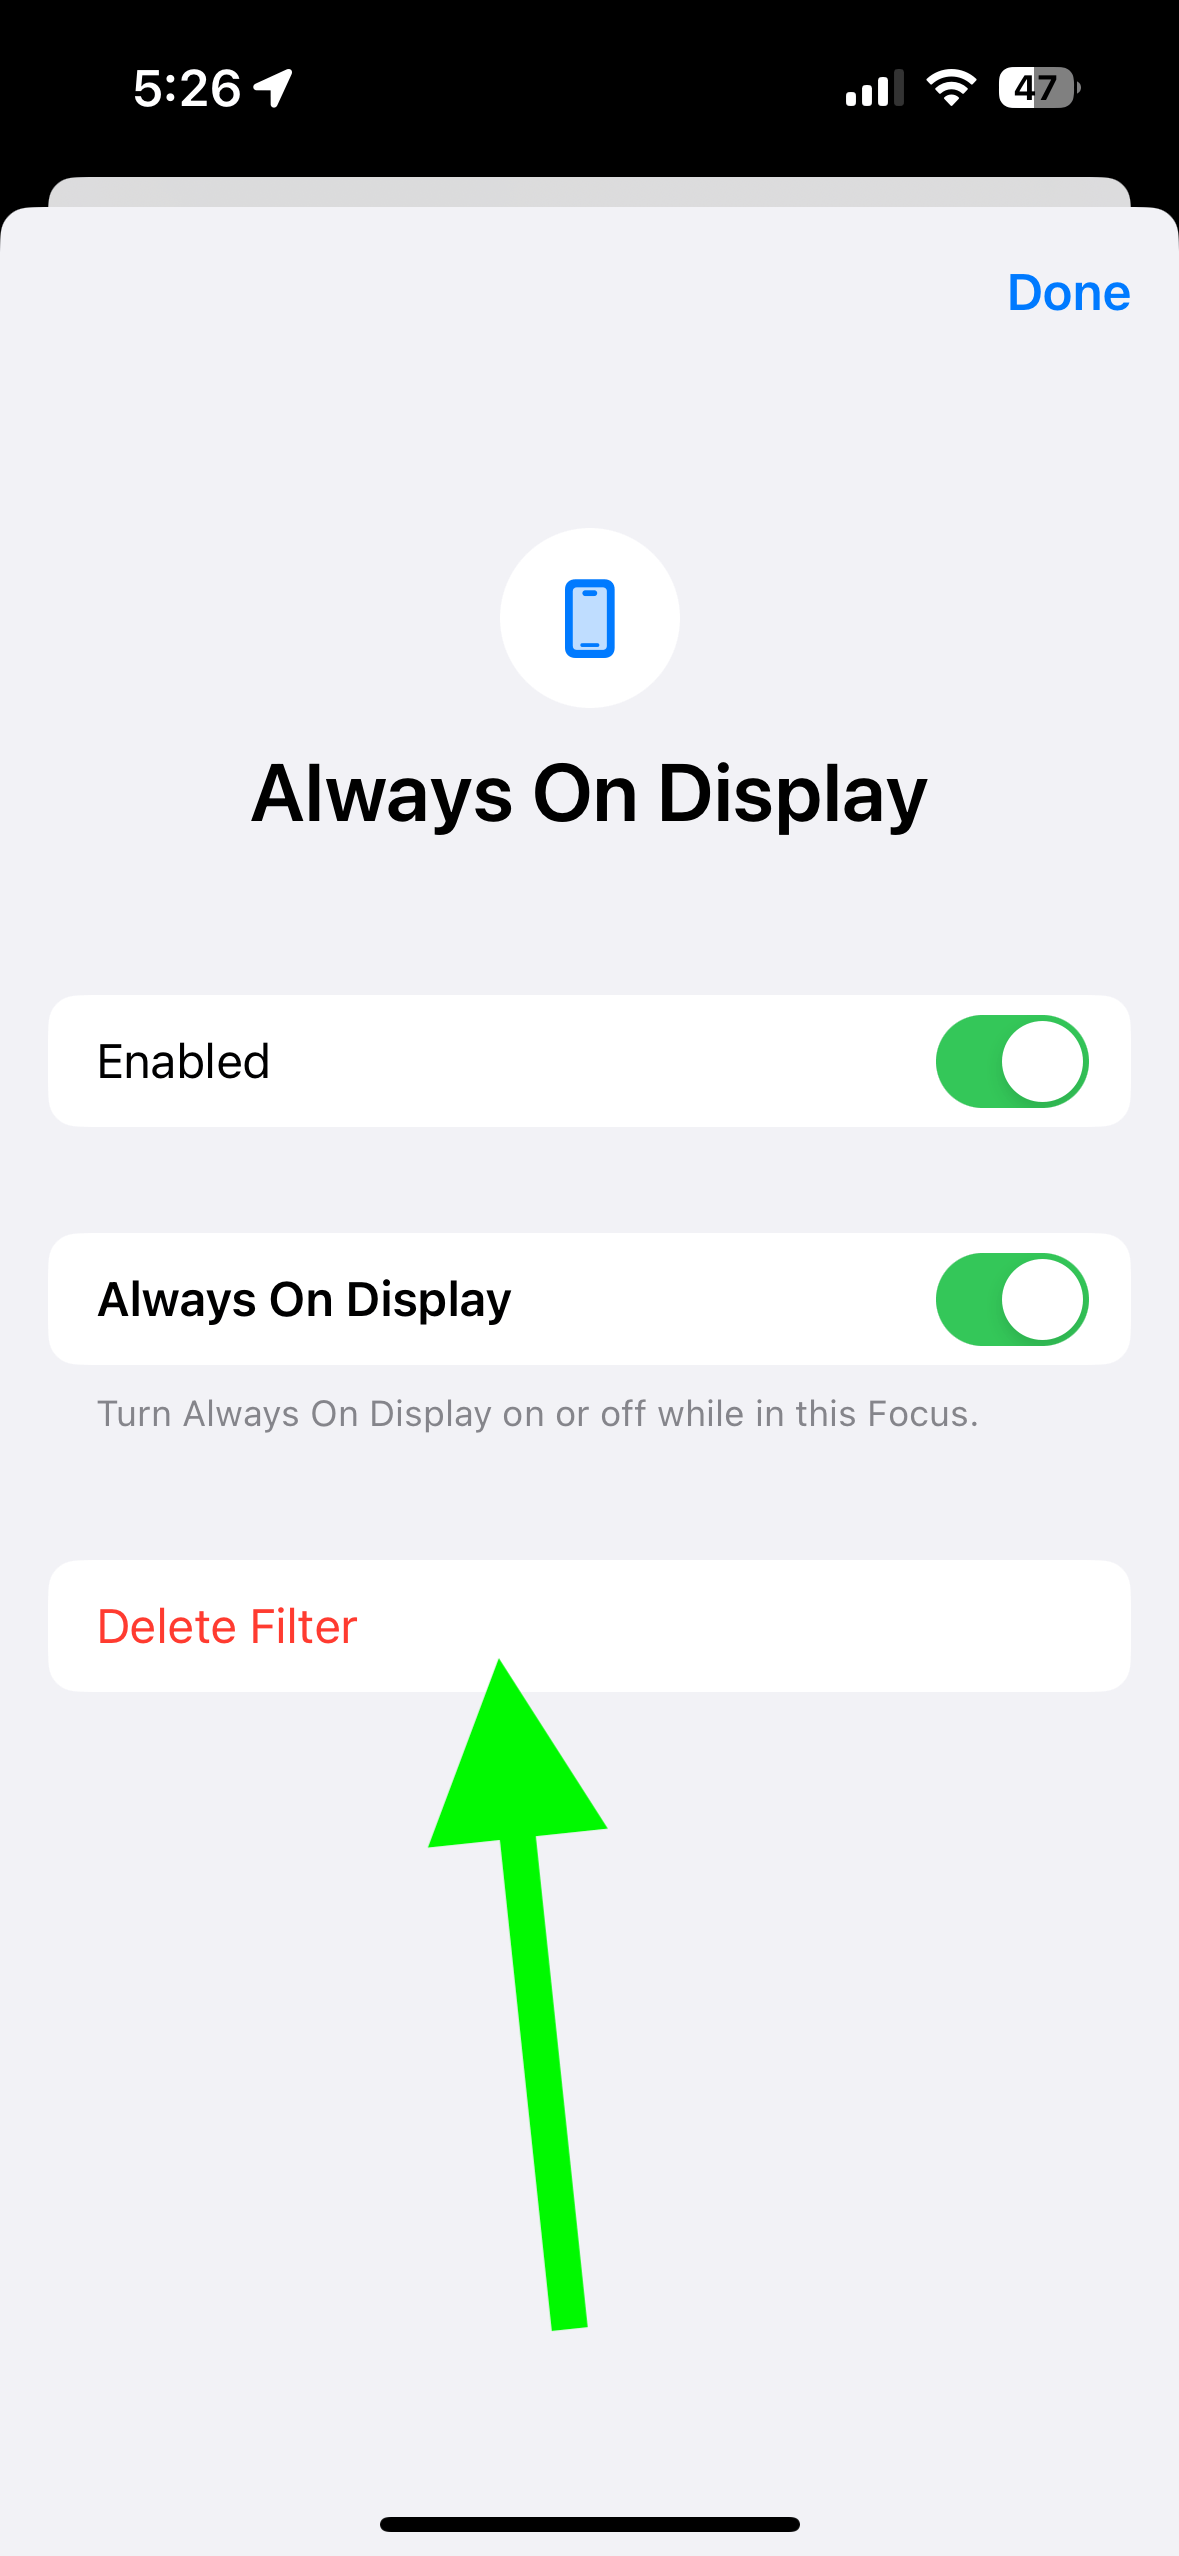 Delete Filter button